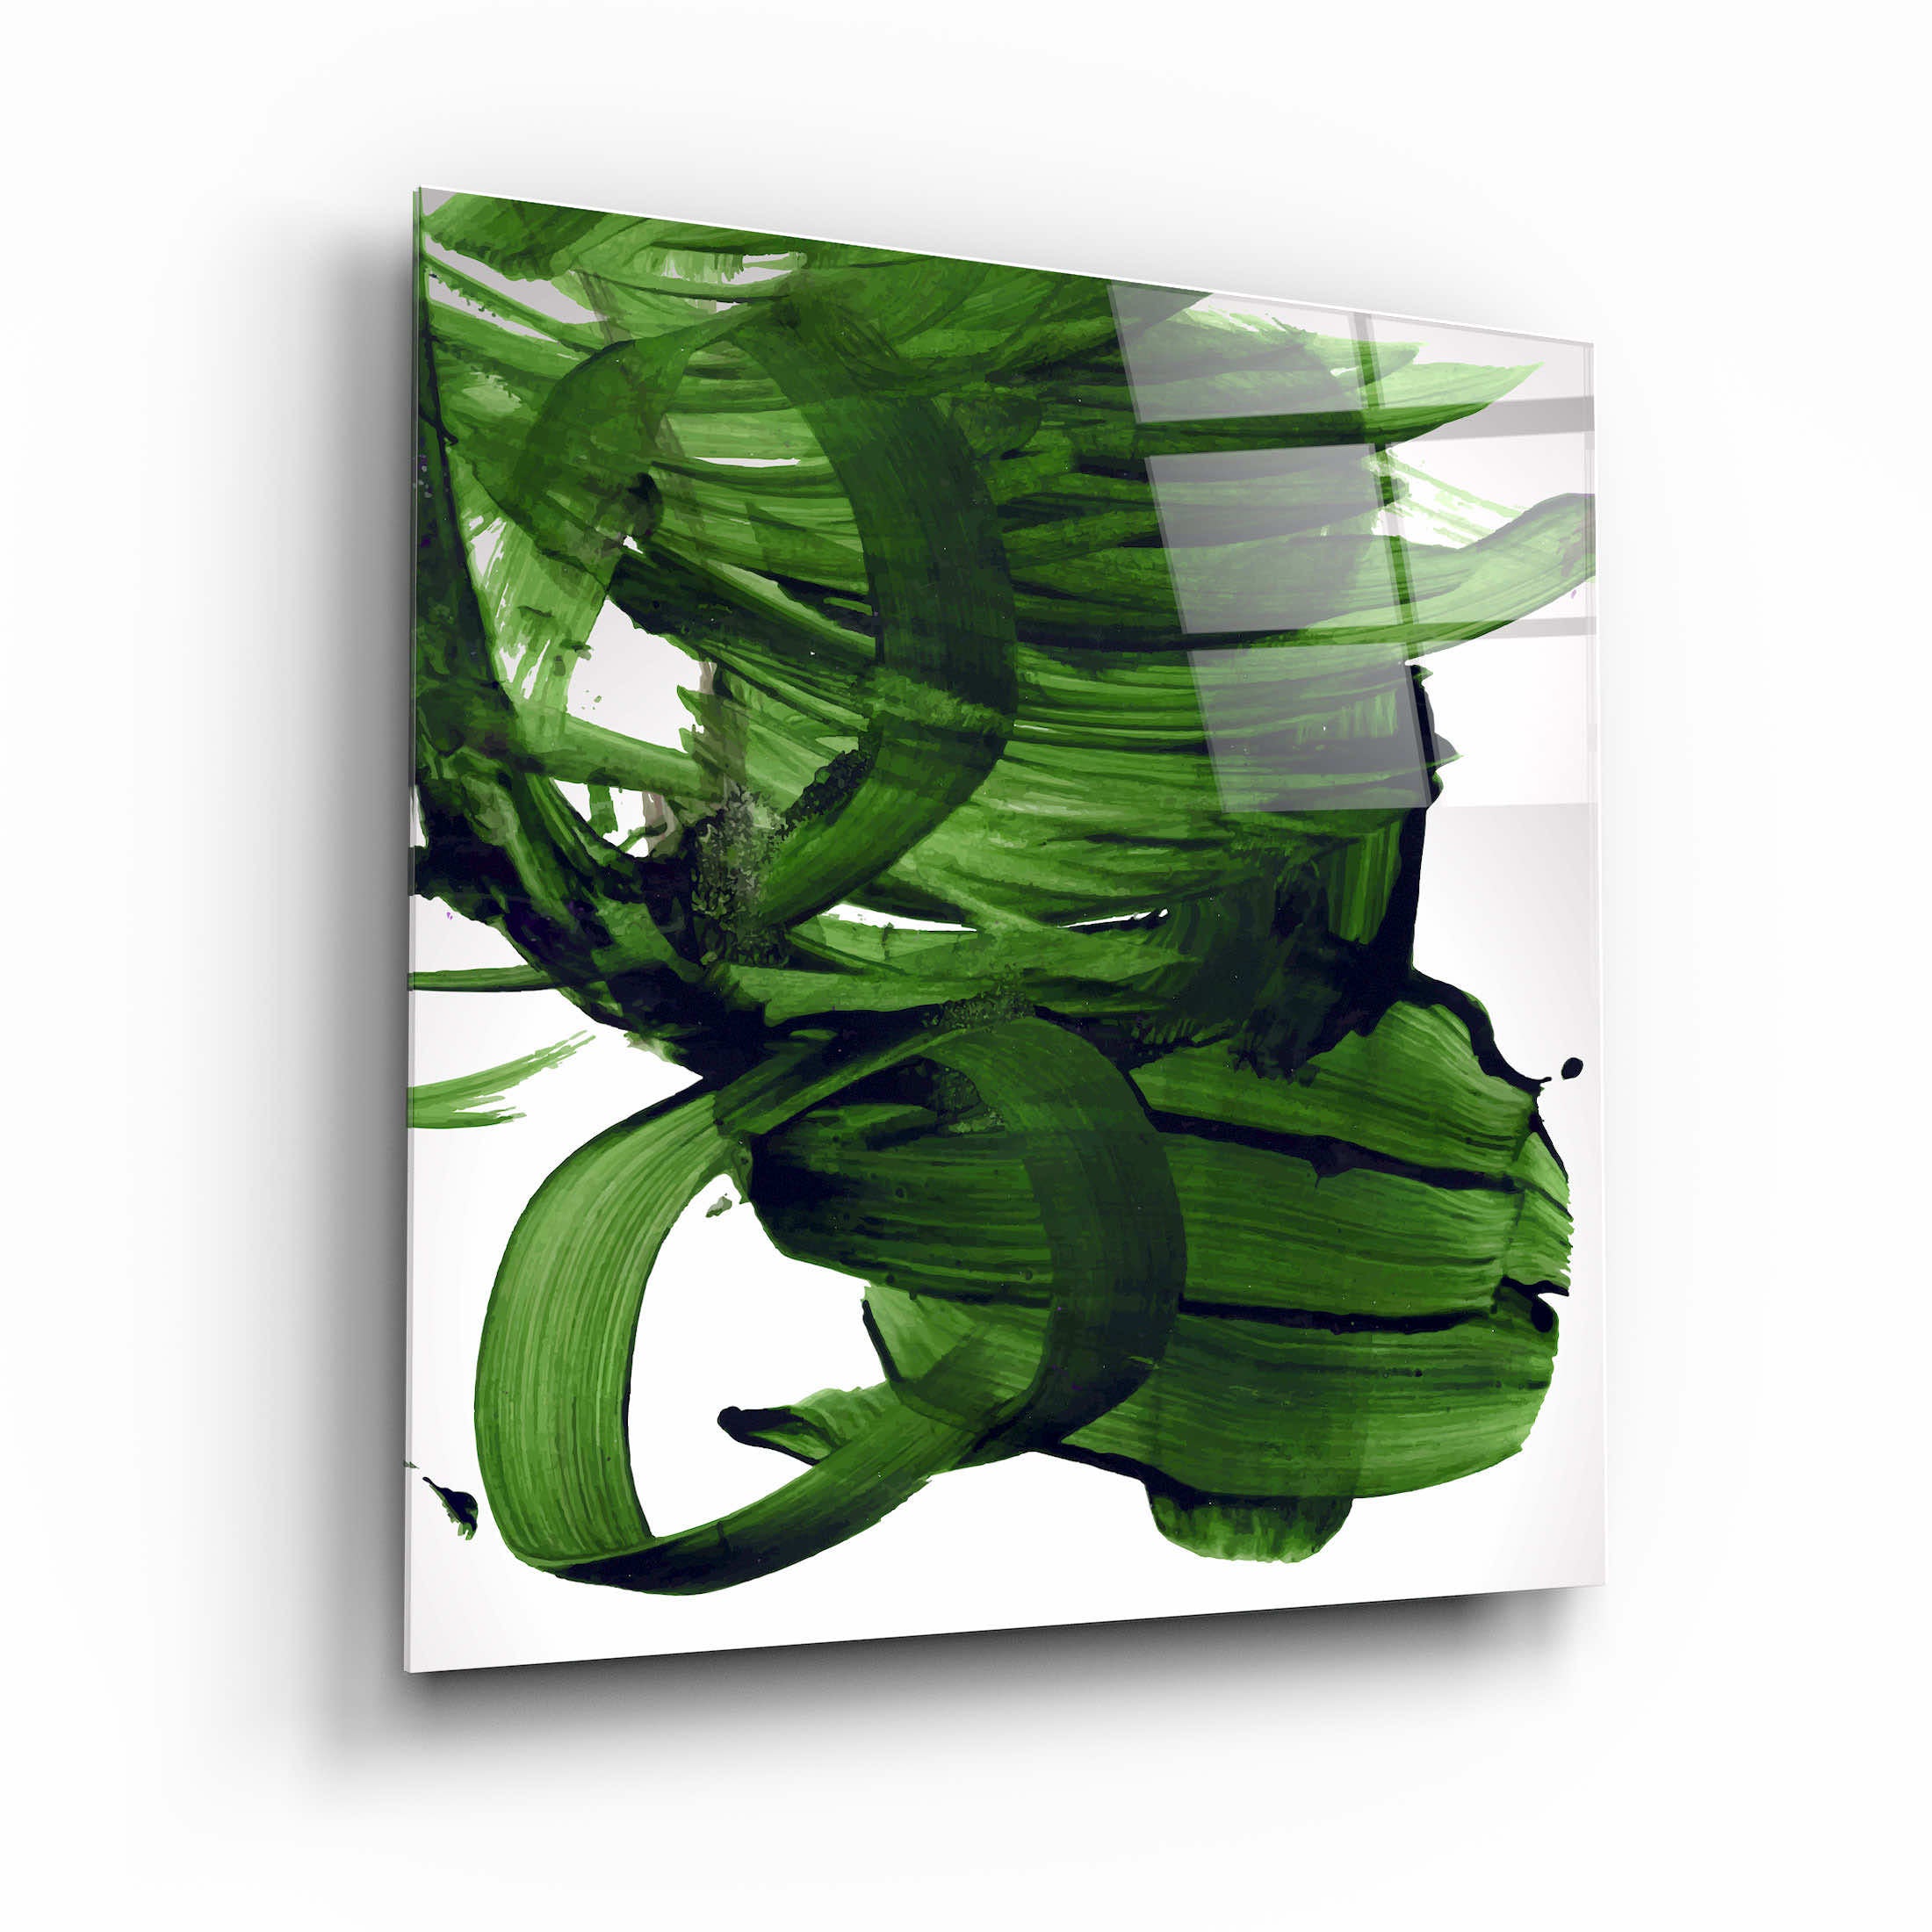 "Coups de pinceau abstraits verts". Art mural en verre de la collection du designer